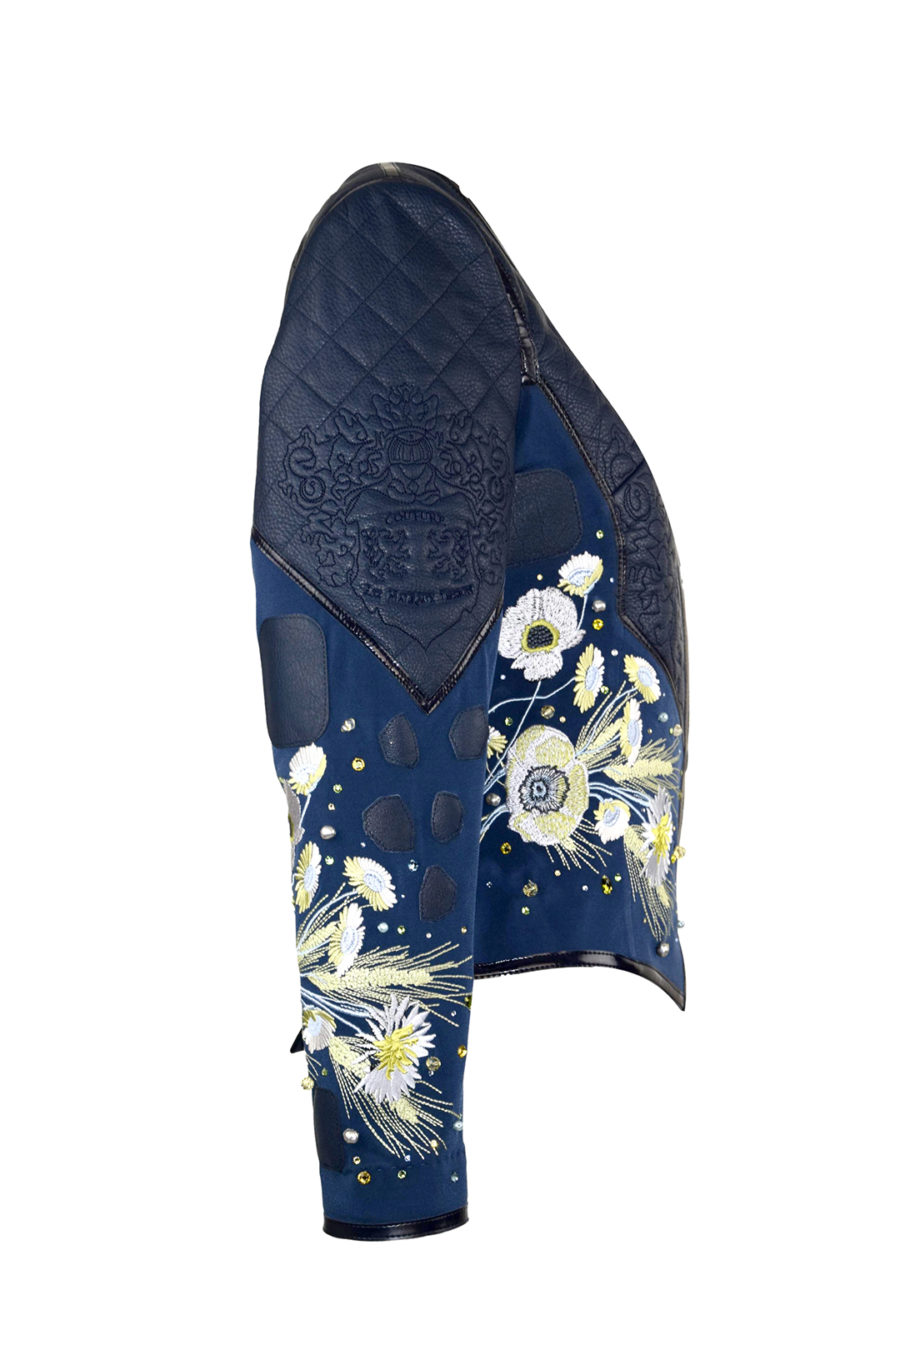 Haute Couture- Jacke mit "Country-embroidery"-4 Motive, Nappaleder und Patches mit 180 handapplizierten Kristallen und Perlen von Swarovski, Multisize, St.290000